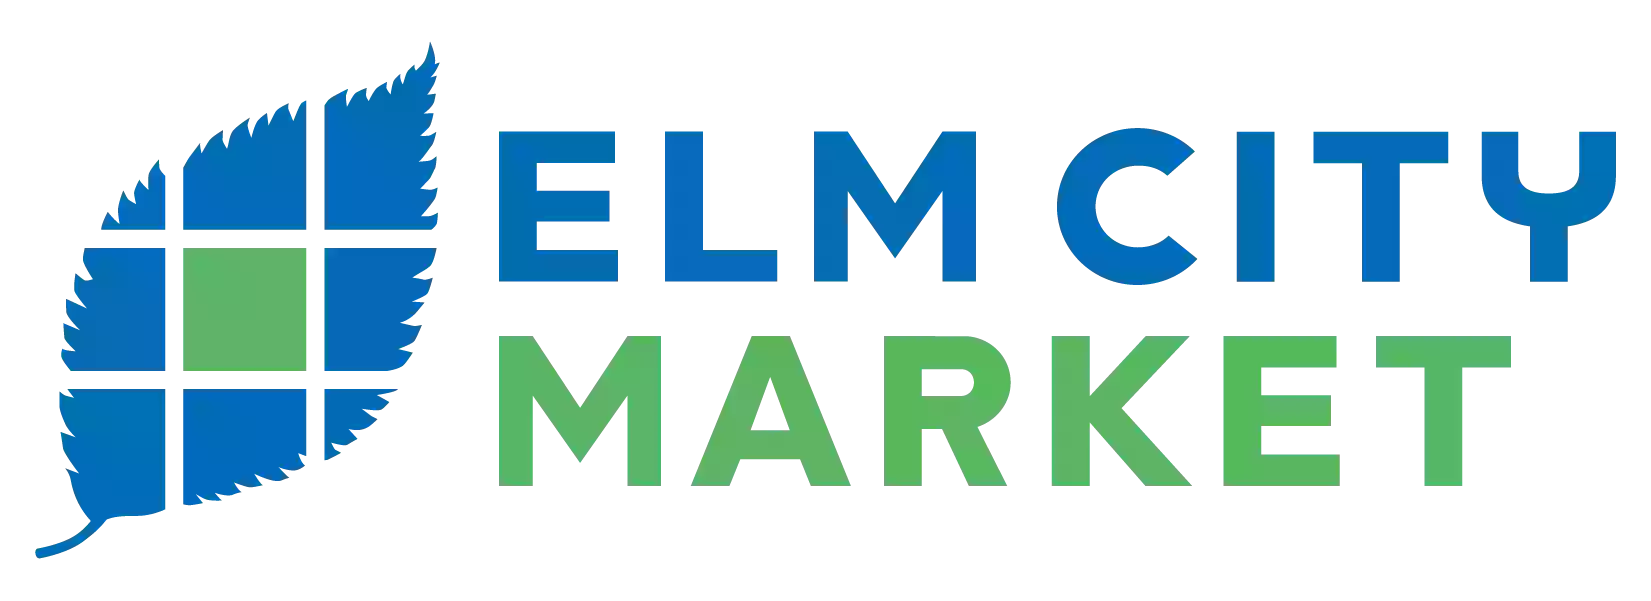 Elm City Market